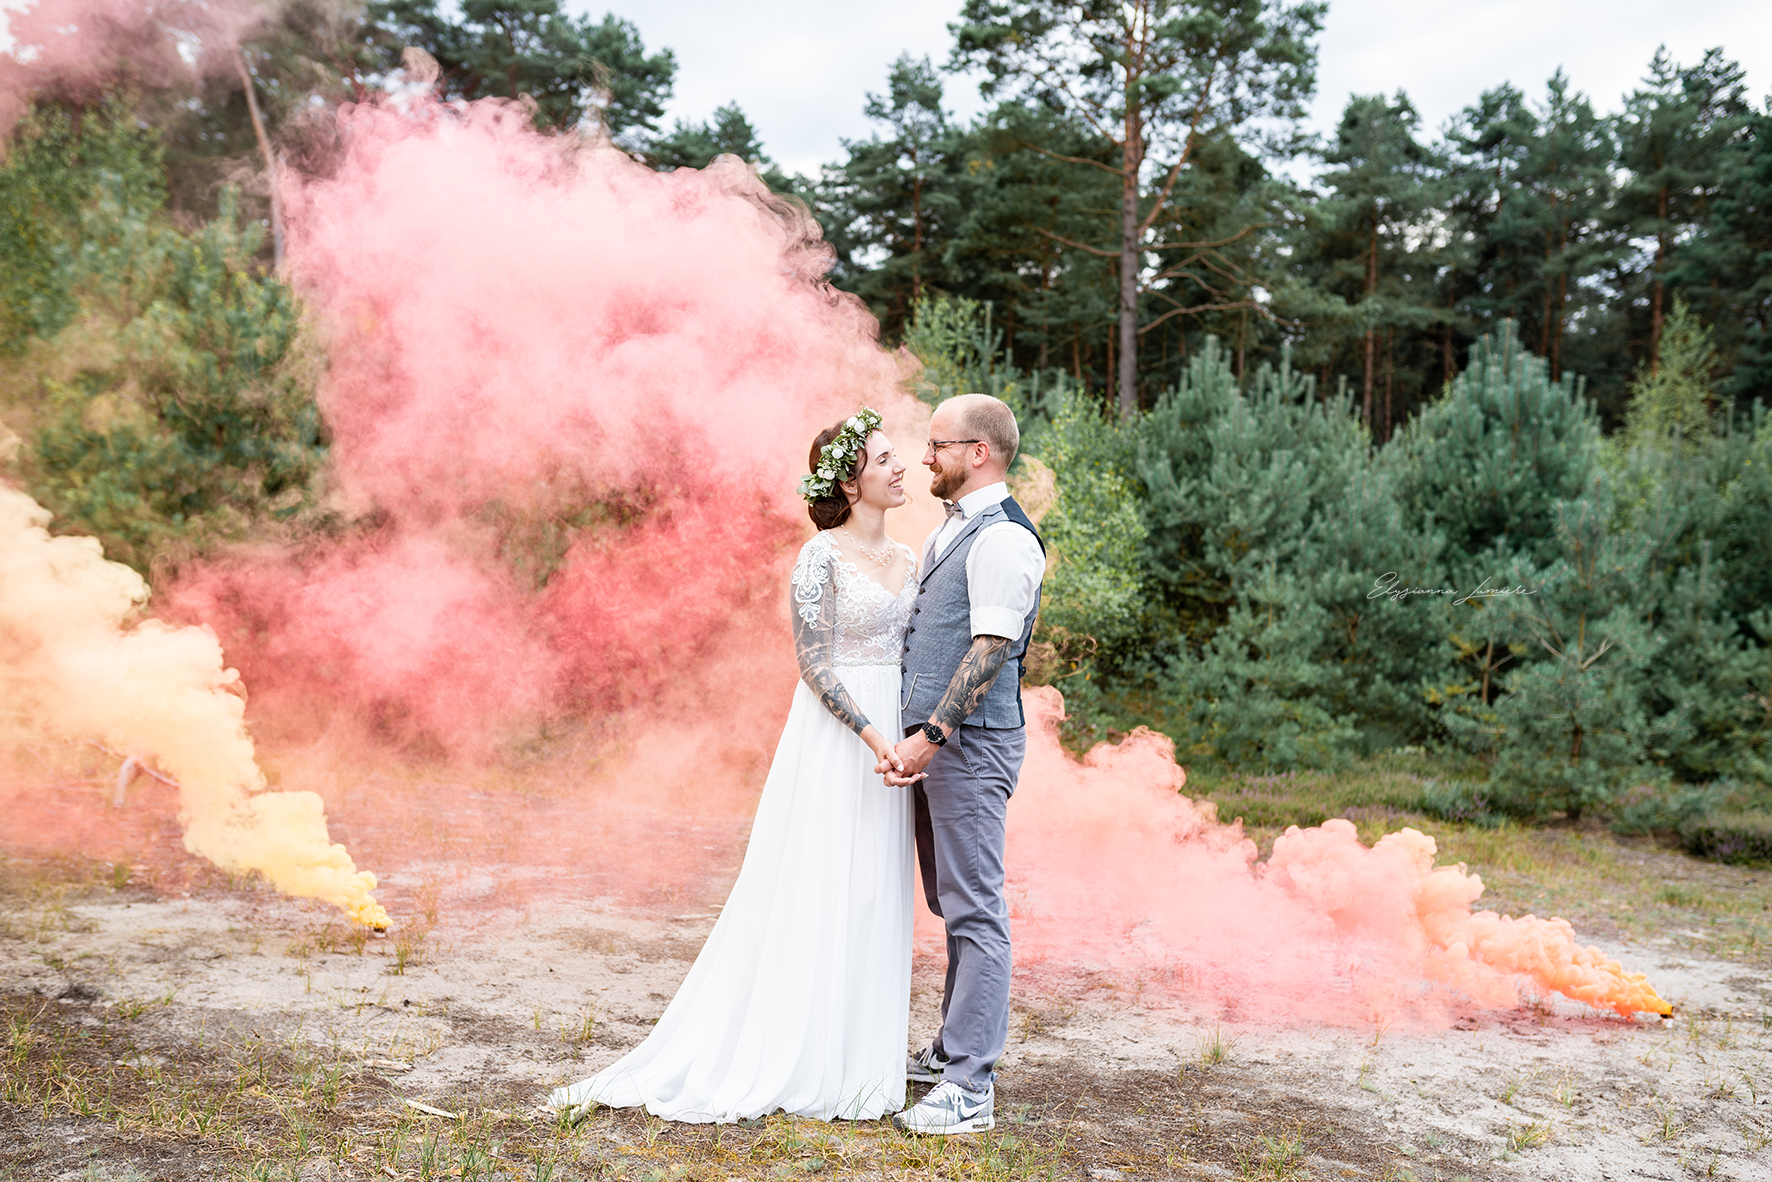 Hochzeitsfotos mit Rauchfackeln in den Dünen I Elysianna Lumiere Photography